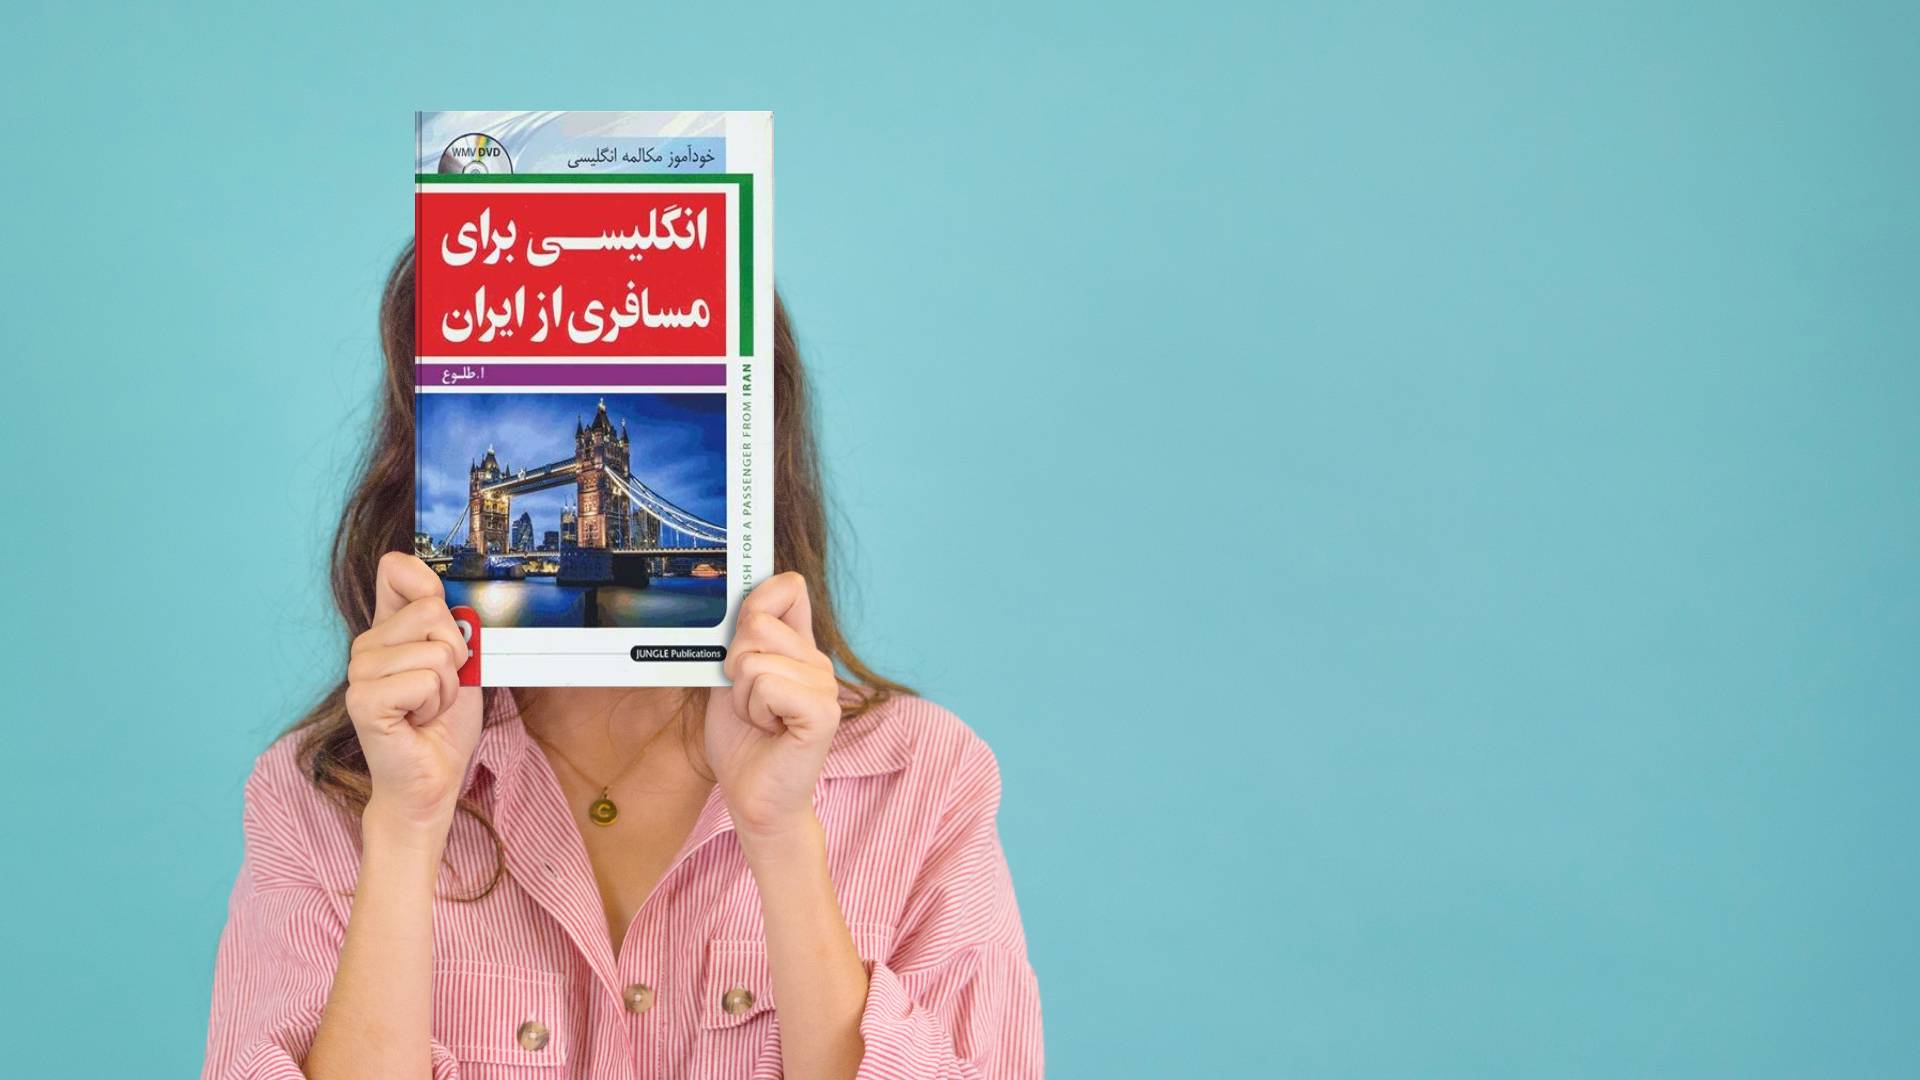 خرید کتاب زبان انگلیسی | زبان استور | کتاب خودآموز زبان انگلیسی | کتاب انگلیسی برای مسافری از ایران دو